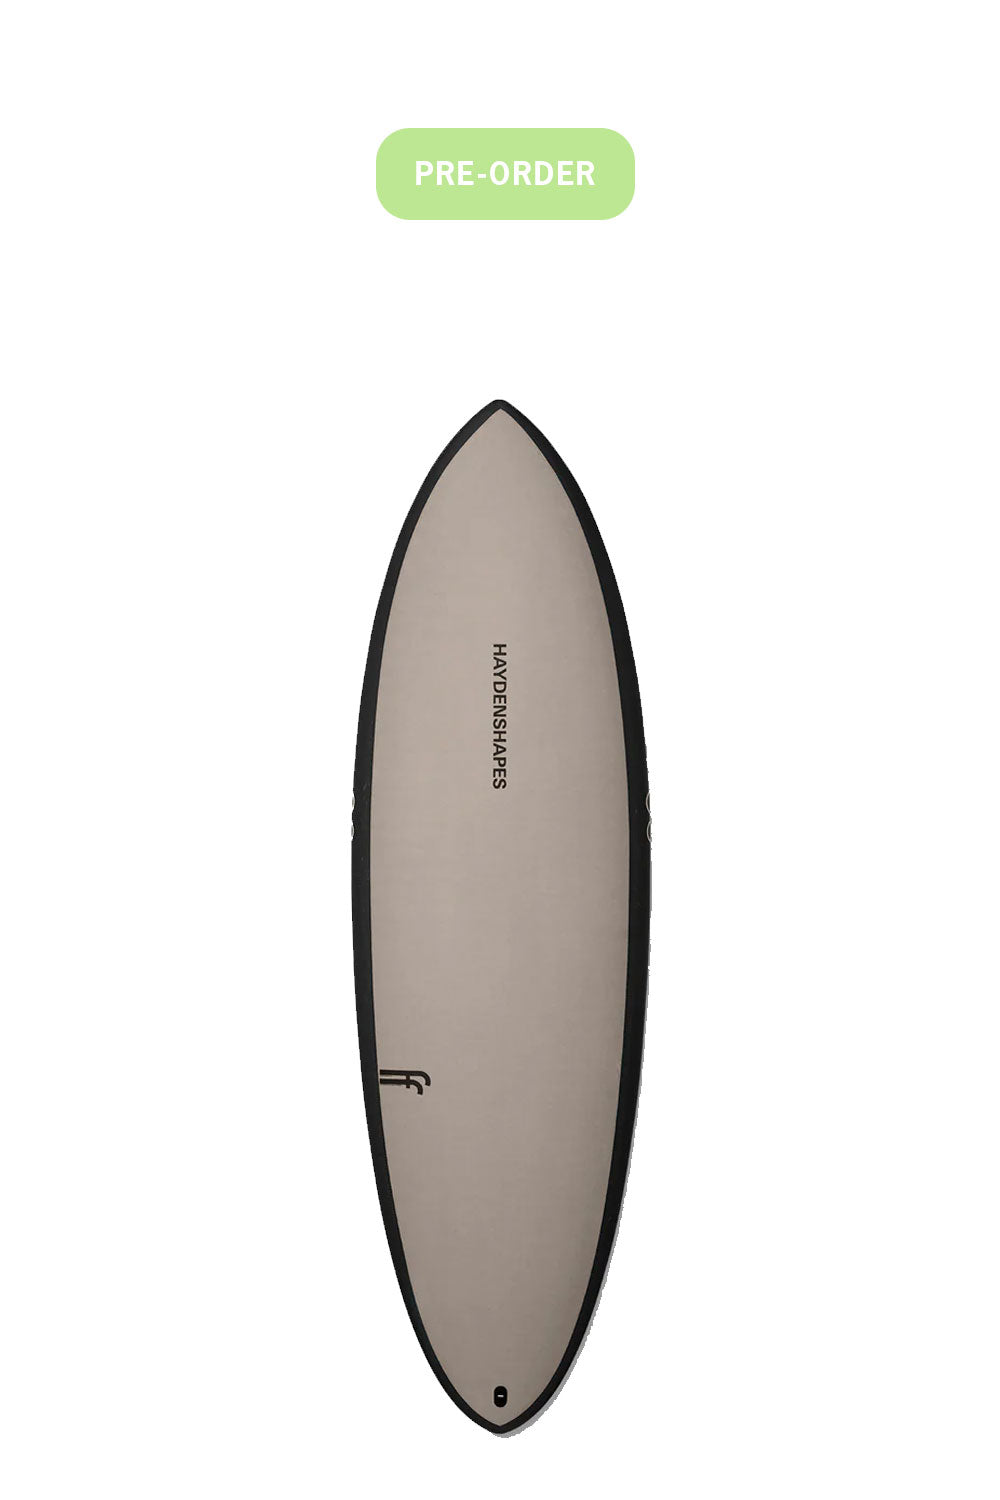 Pukas-Surf-Shop-HaydenShapes-Surfboards-Pre-Order-Sand-